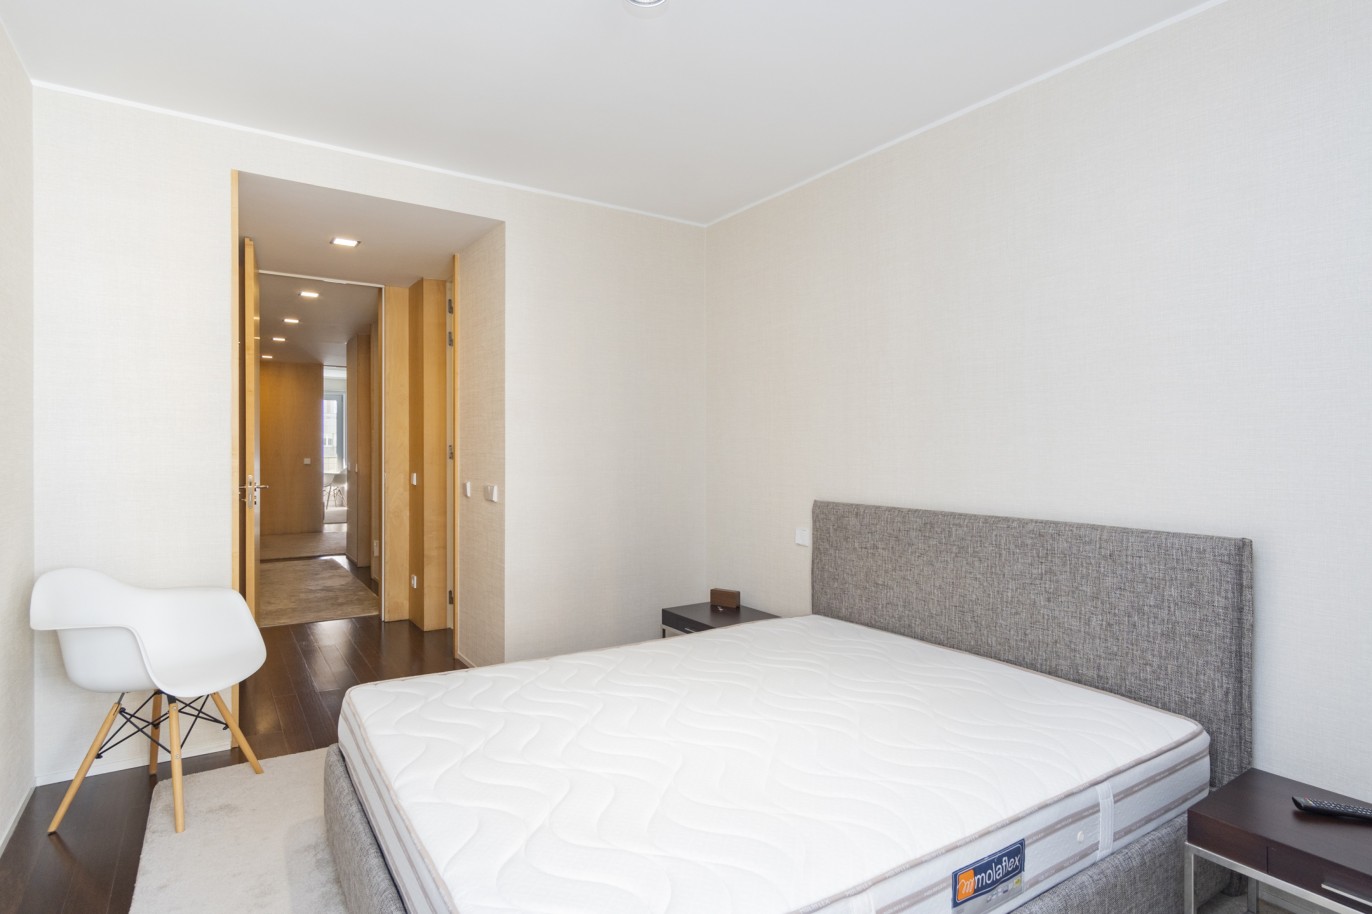 3 Bedroom Duplex Apartment with balcony, for sale, in Boavista, Porto, Portugal_217718